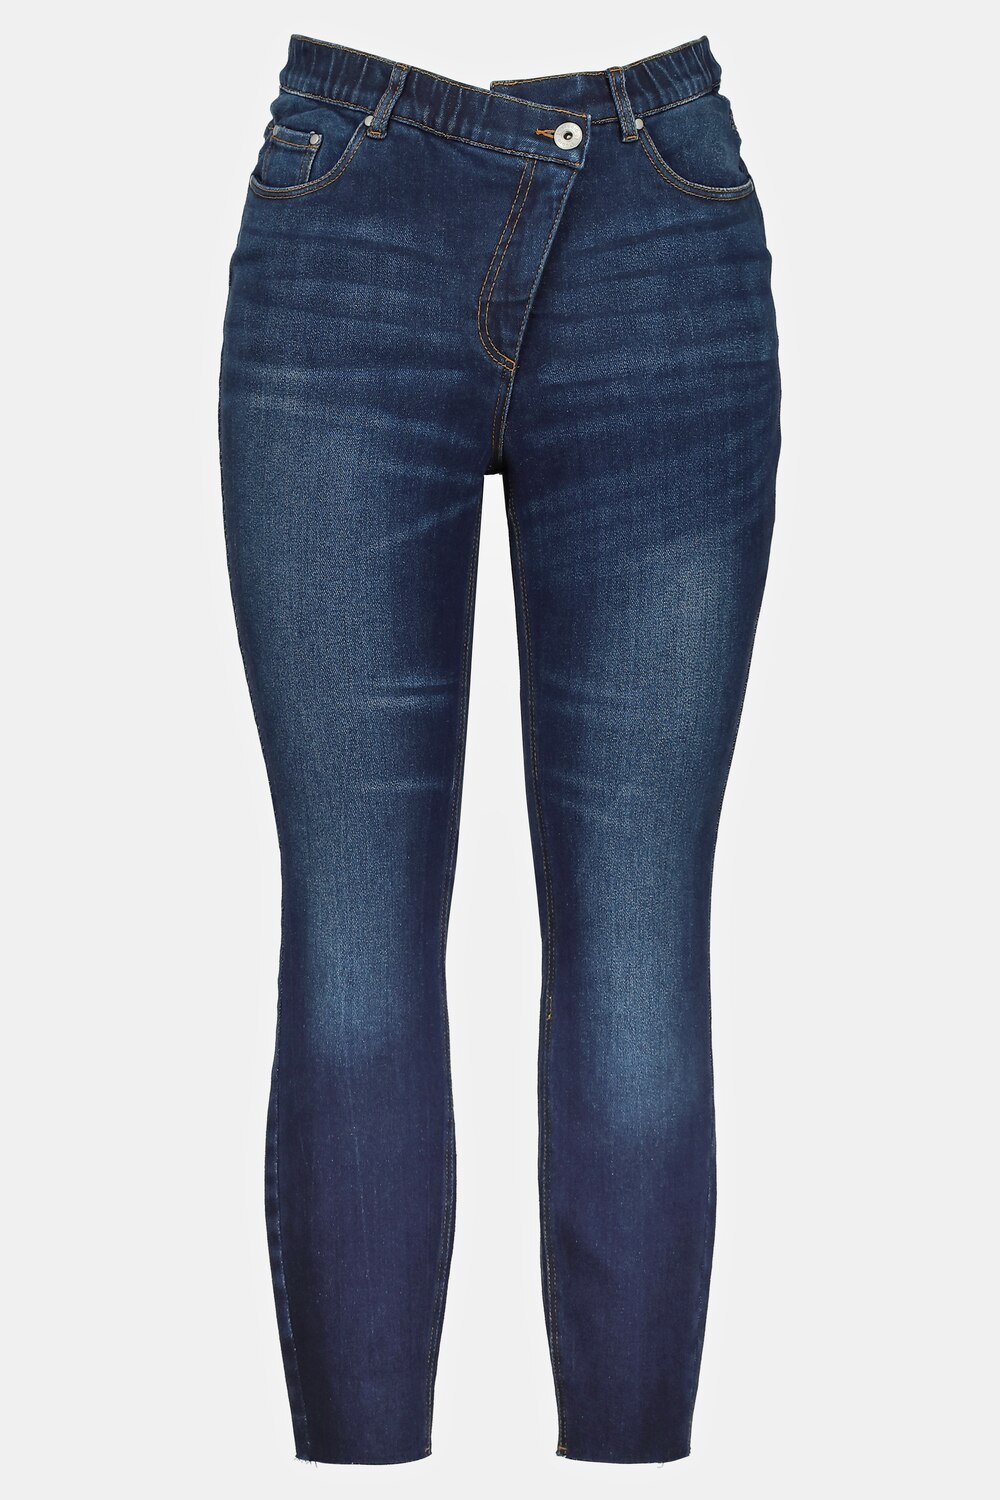 Grote Maten skinny jeans, Dames, blauw, Maat: 44, Katoen, Studio Untold